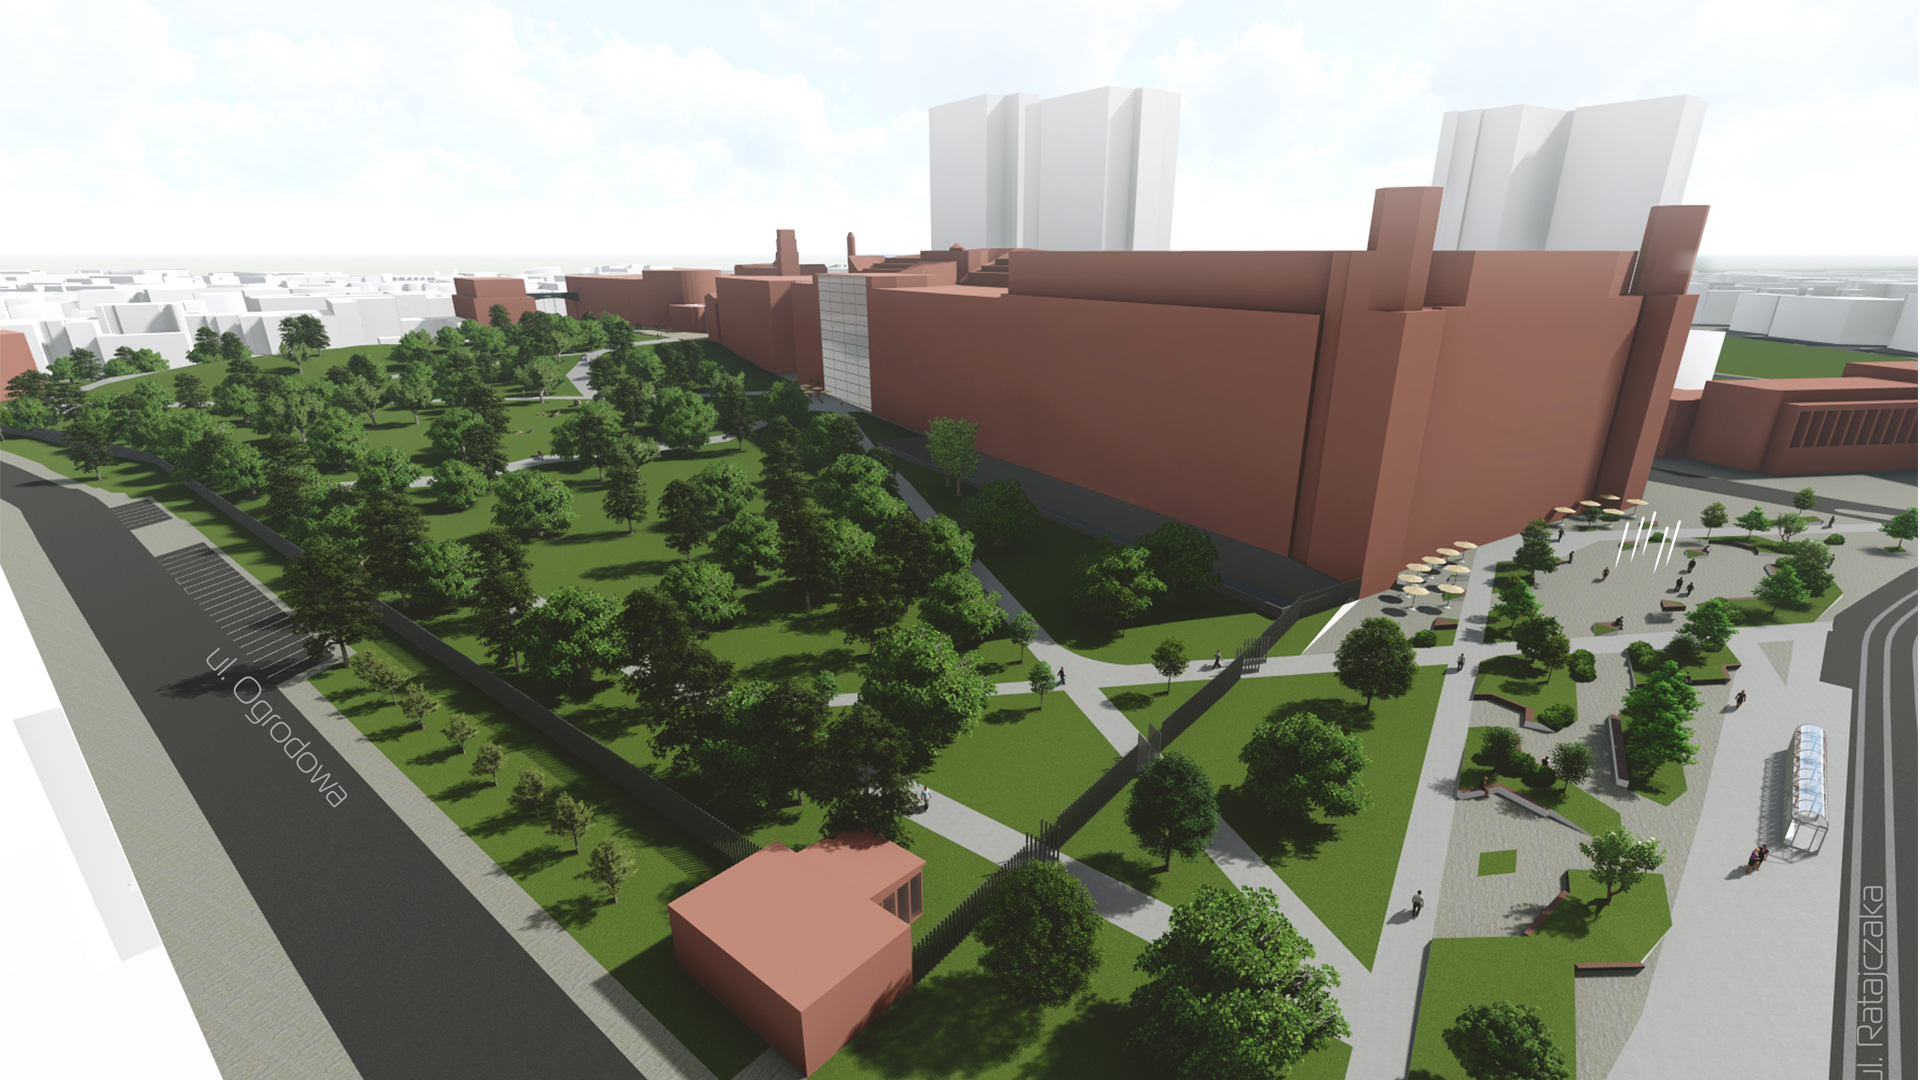 Wizualizacja. Propozycja zagospodarowania terenu wg projektu planu miejscowego. Model budynku Starego Browaru oraz parku przy nim zlokalizowanego.